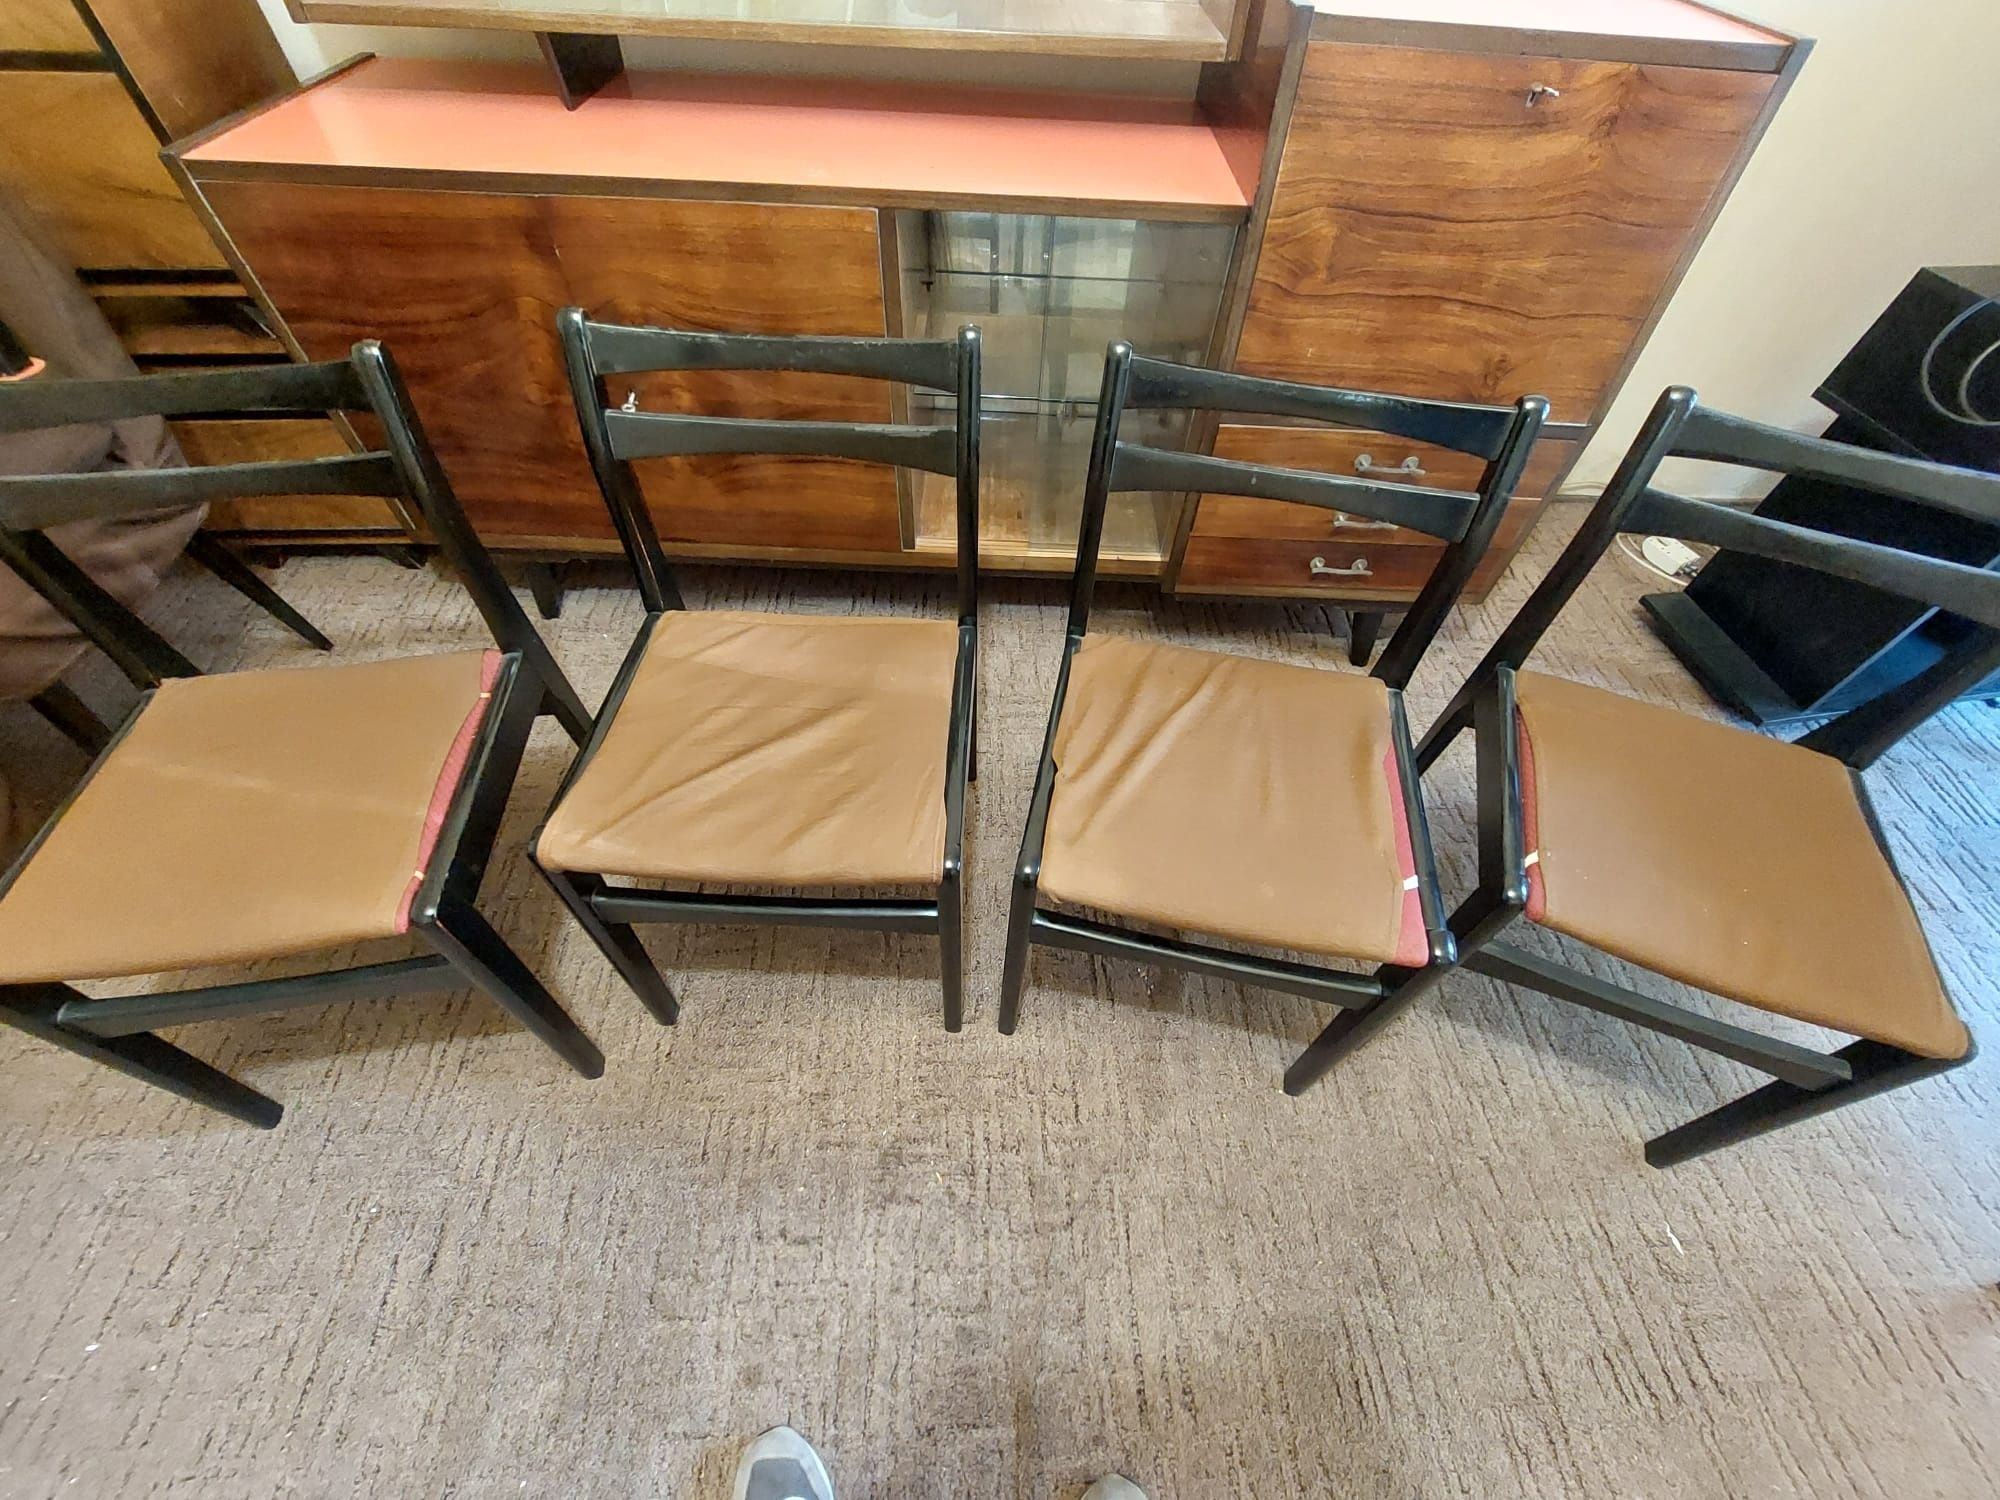 Stare cztery krzesła